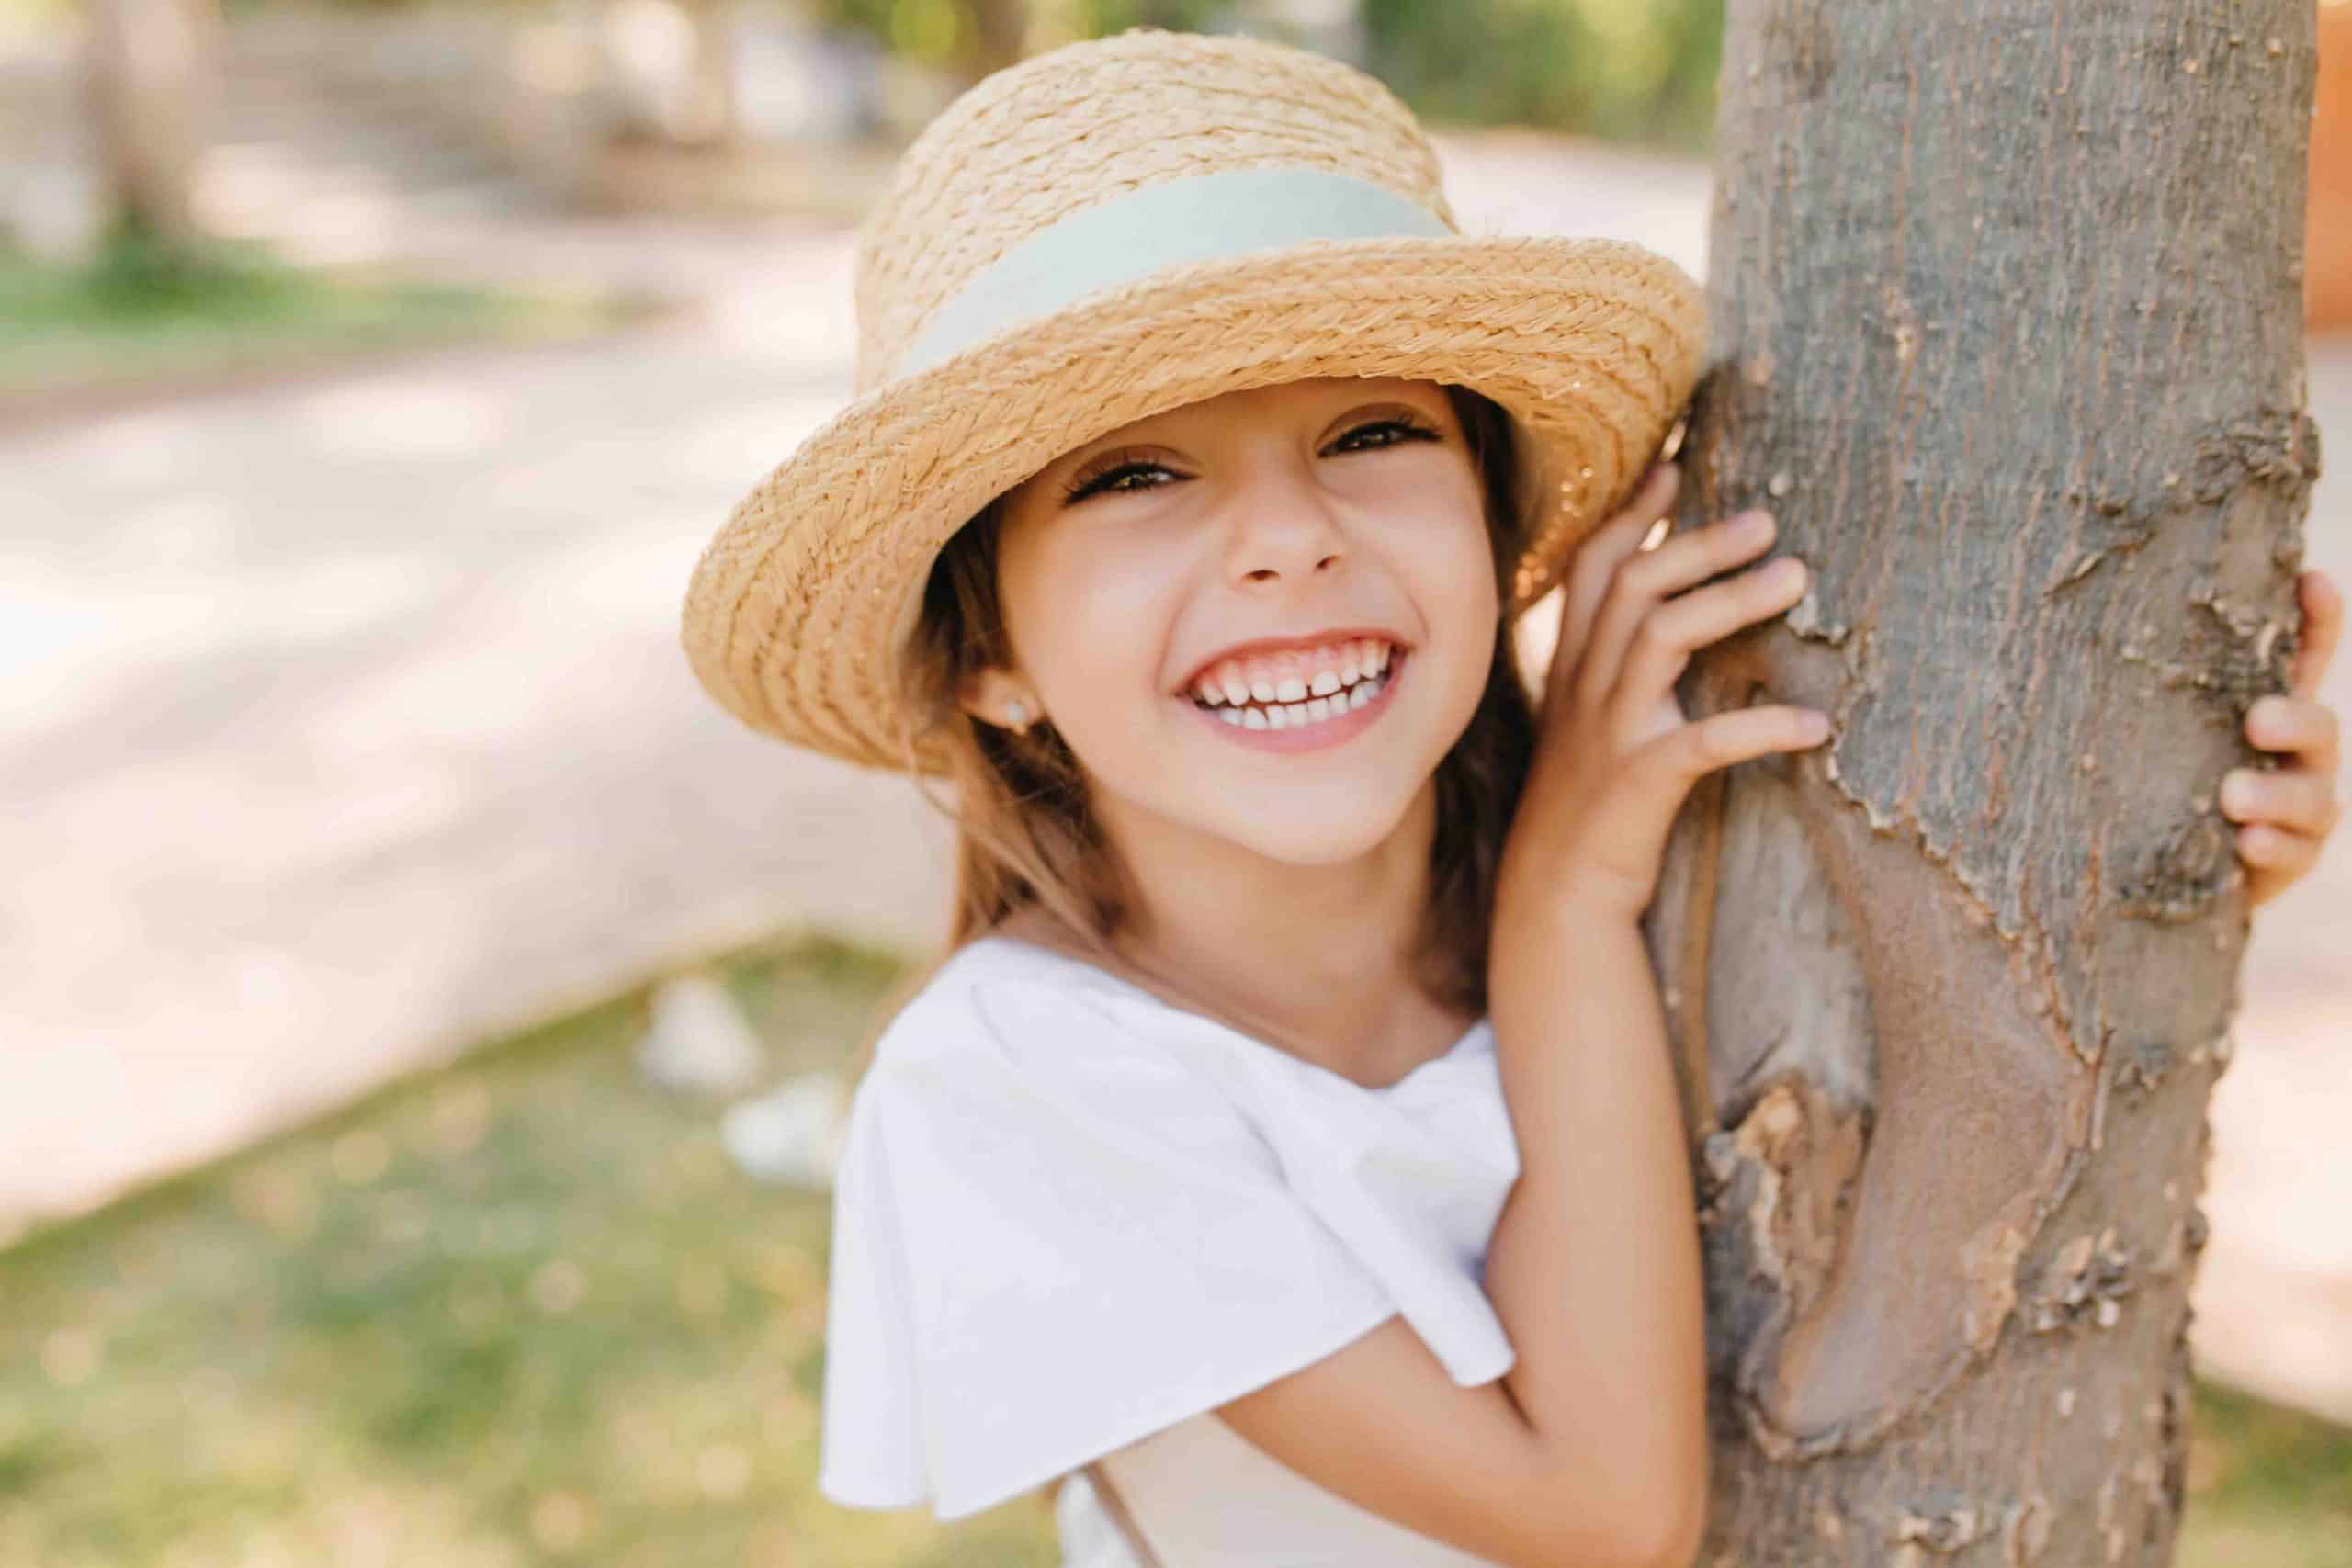 51 Positive Affirmations For Kids For A Positive Mindset